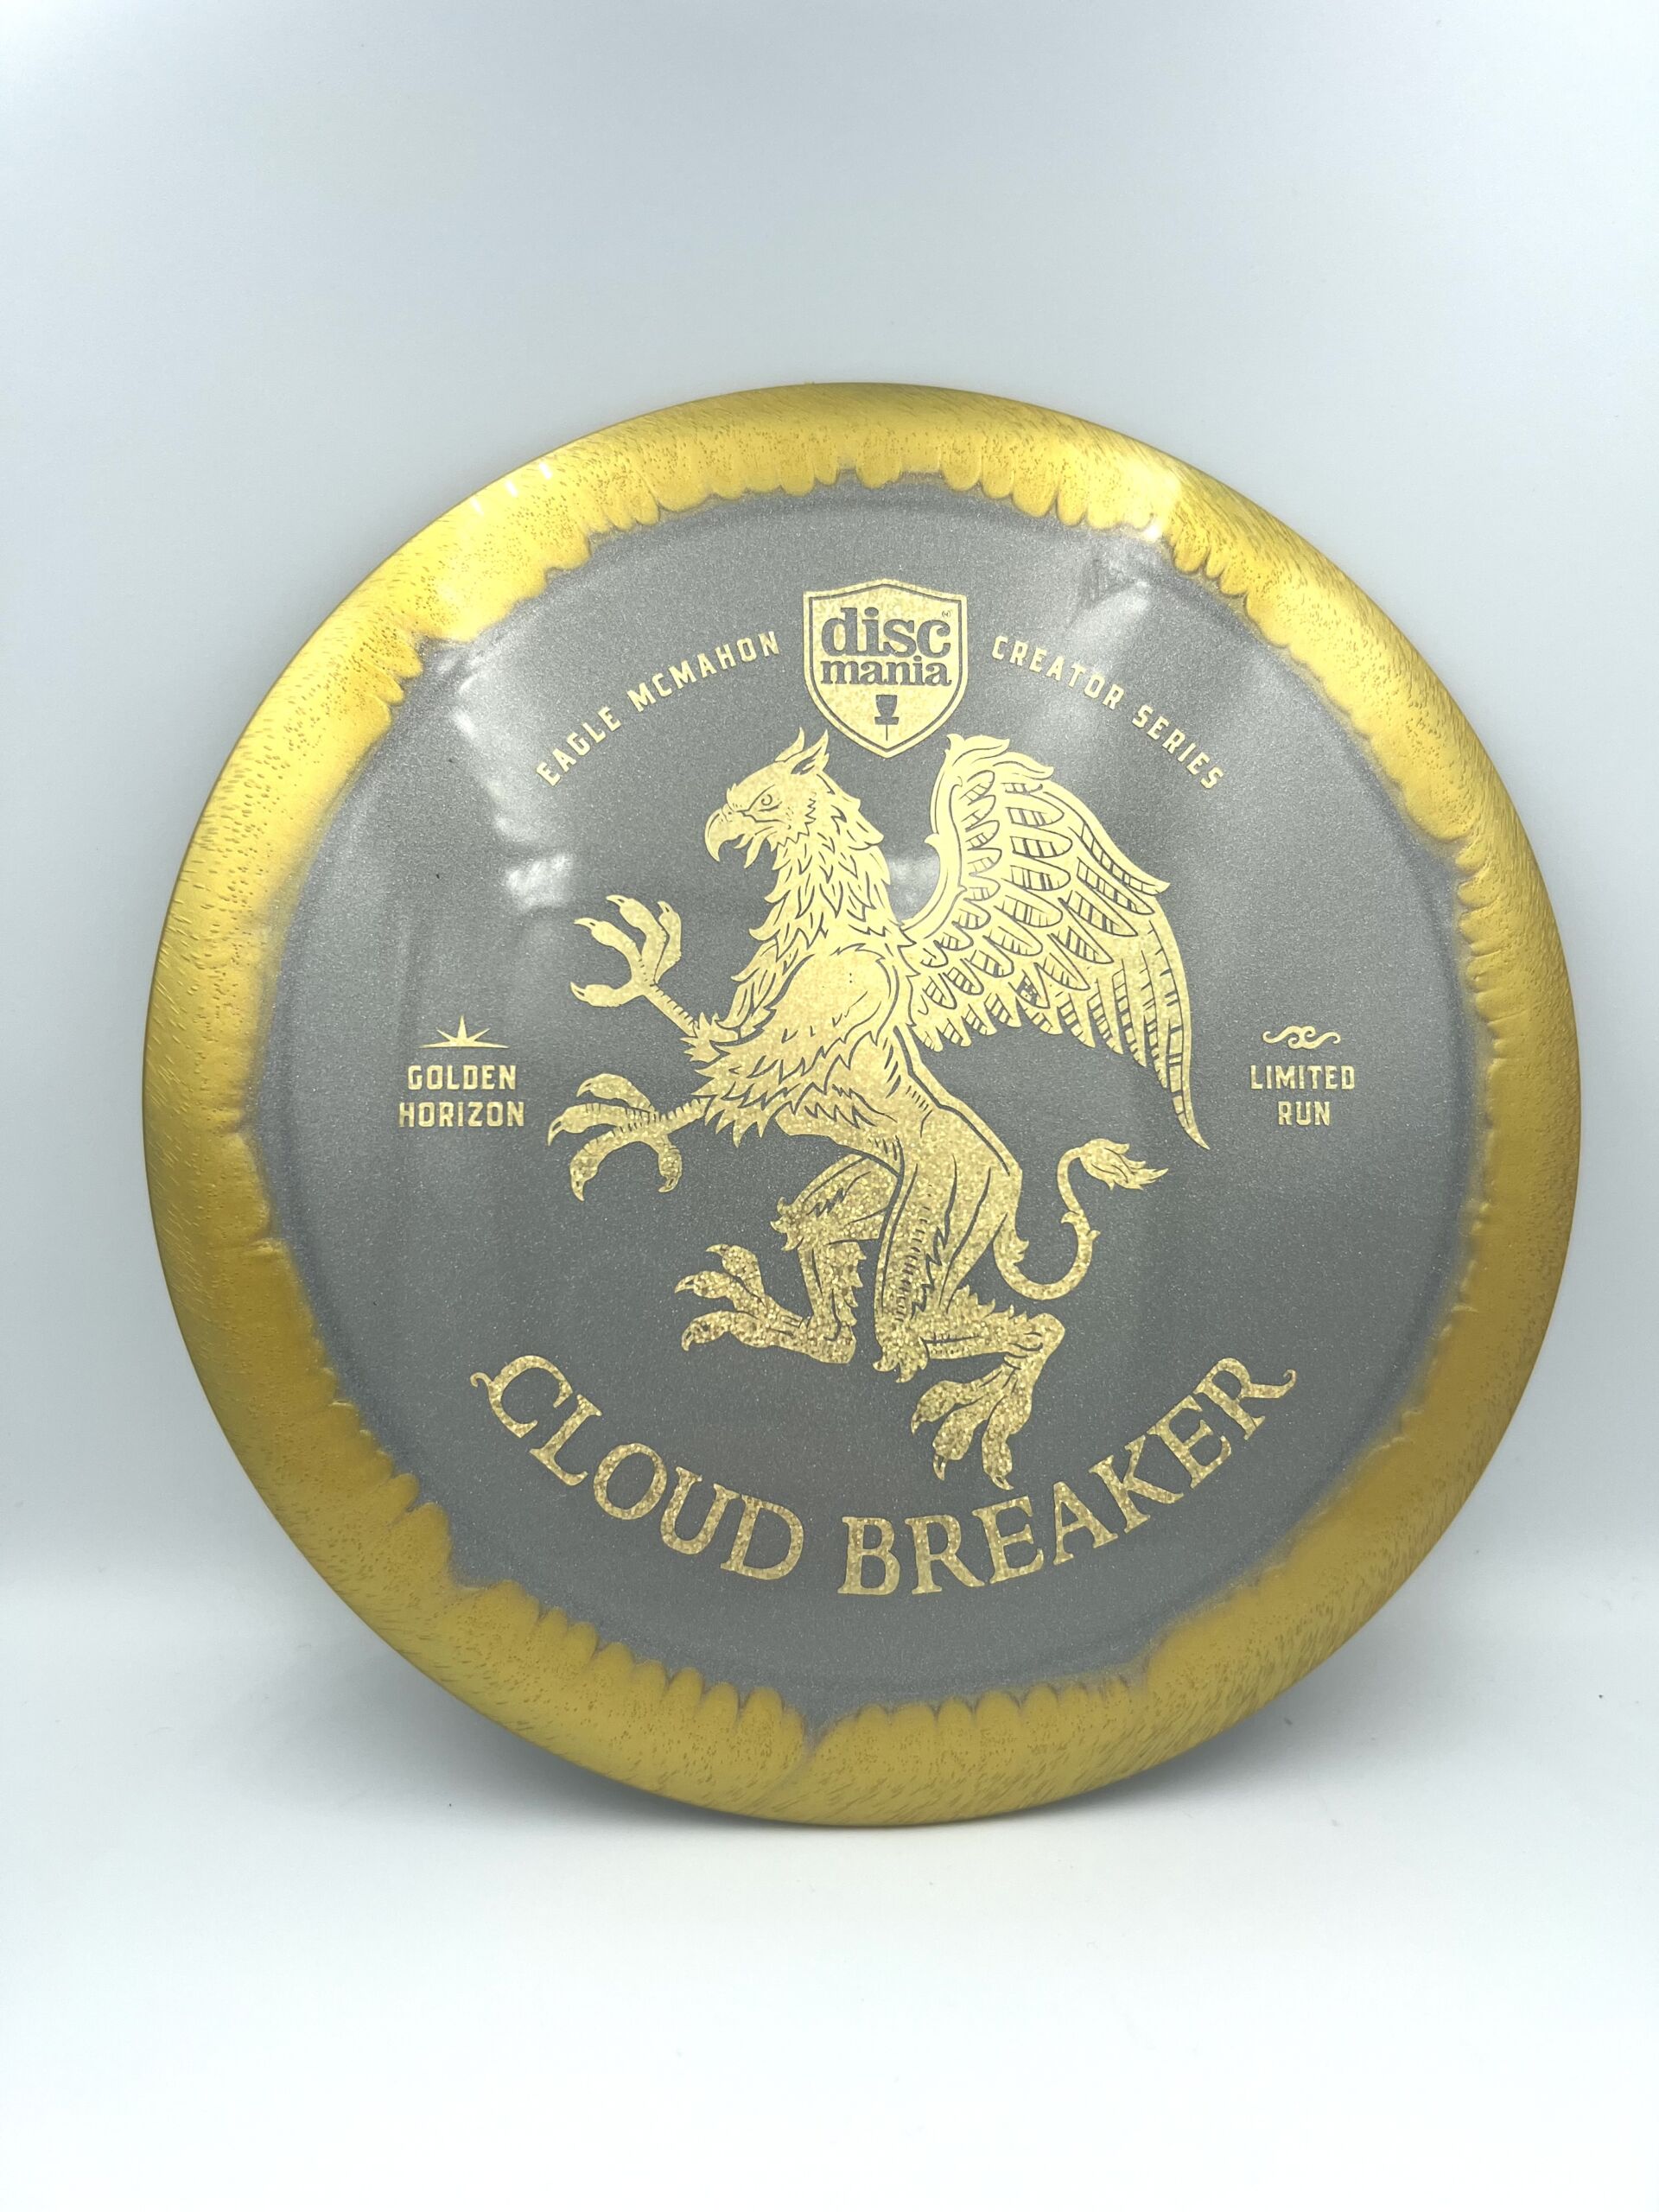 Golden Horizon Cloudbreaker